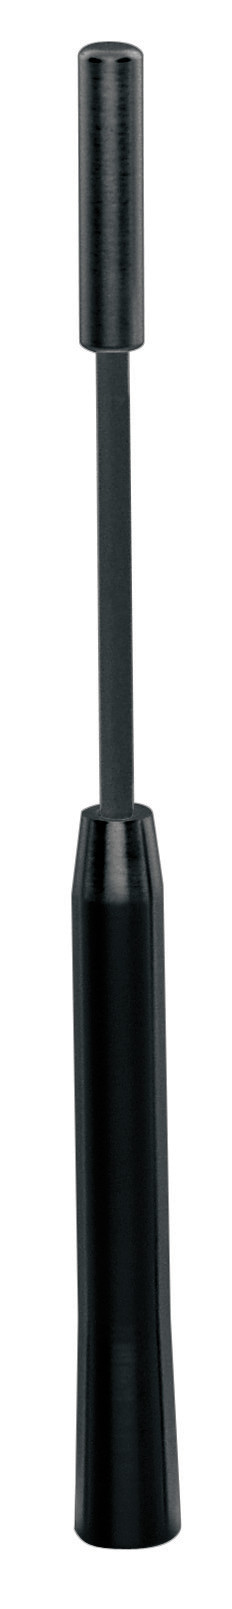 Tetőantenna pálca Alu-Tech - Ø 6 mm - Fekete thumb